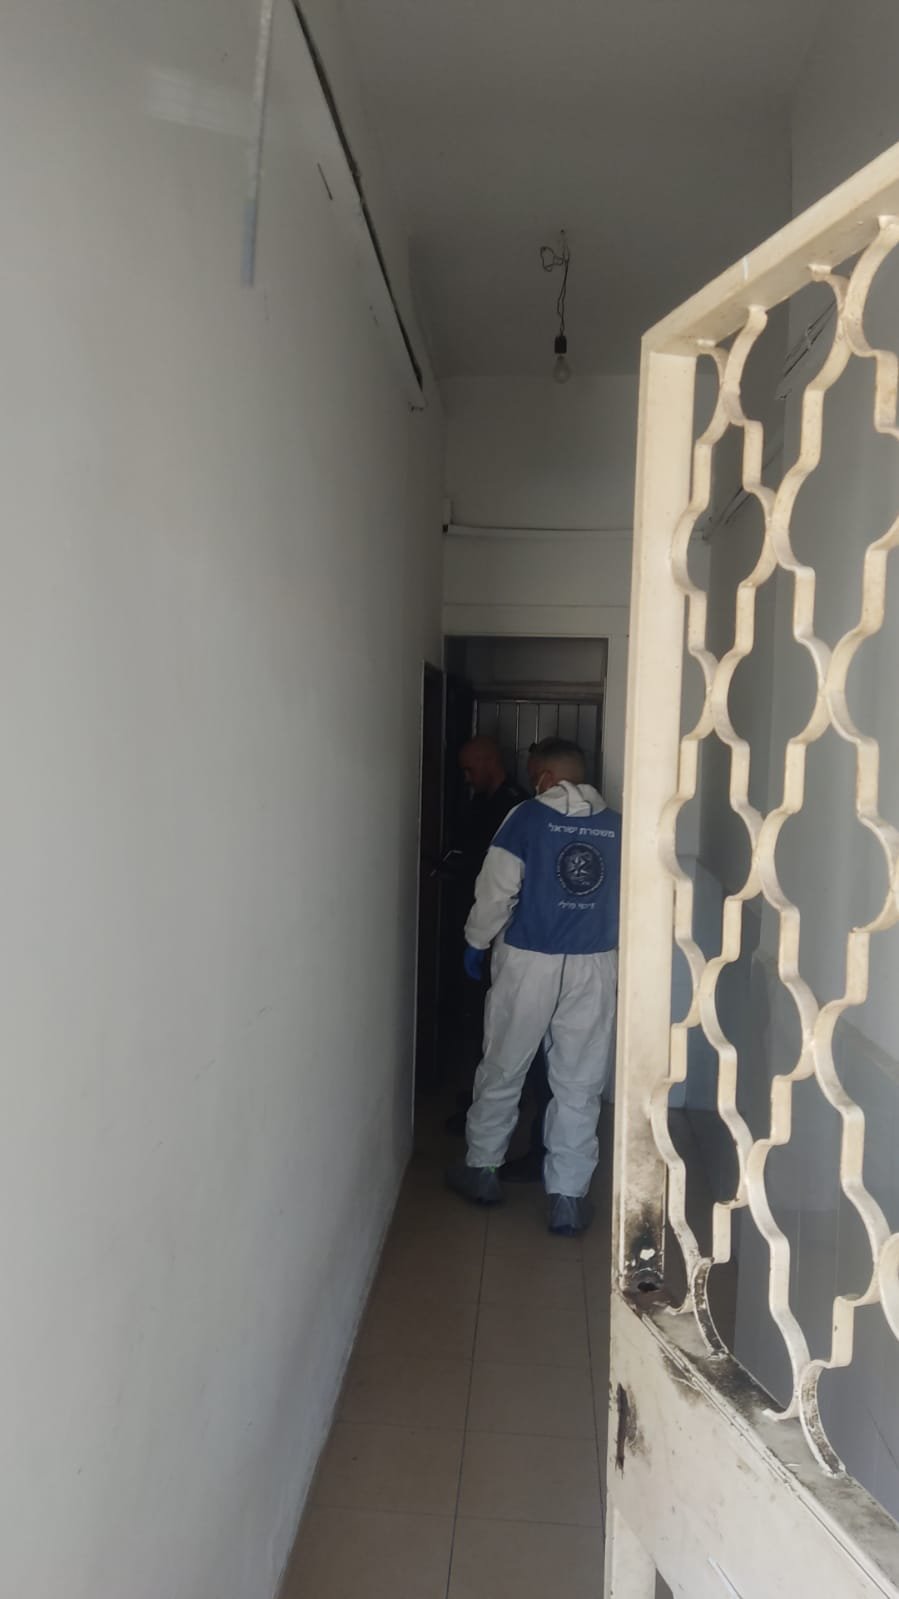 بعد العثور على جثة في الحائط بأحد المنازل في حيفا.. الشبهات تتجه الى زميل في السكن-1